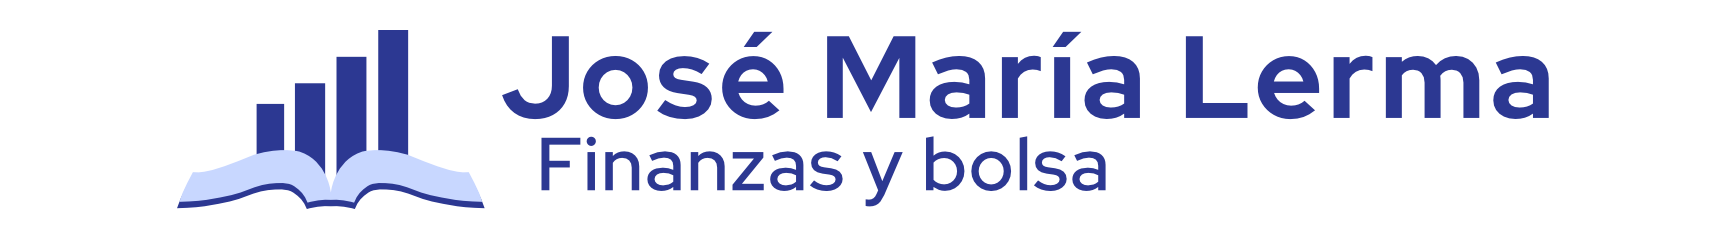 Jose María Lerma - Finanzas y bolsa